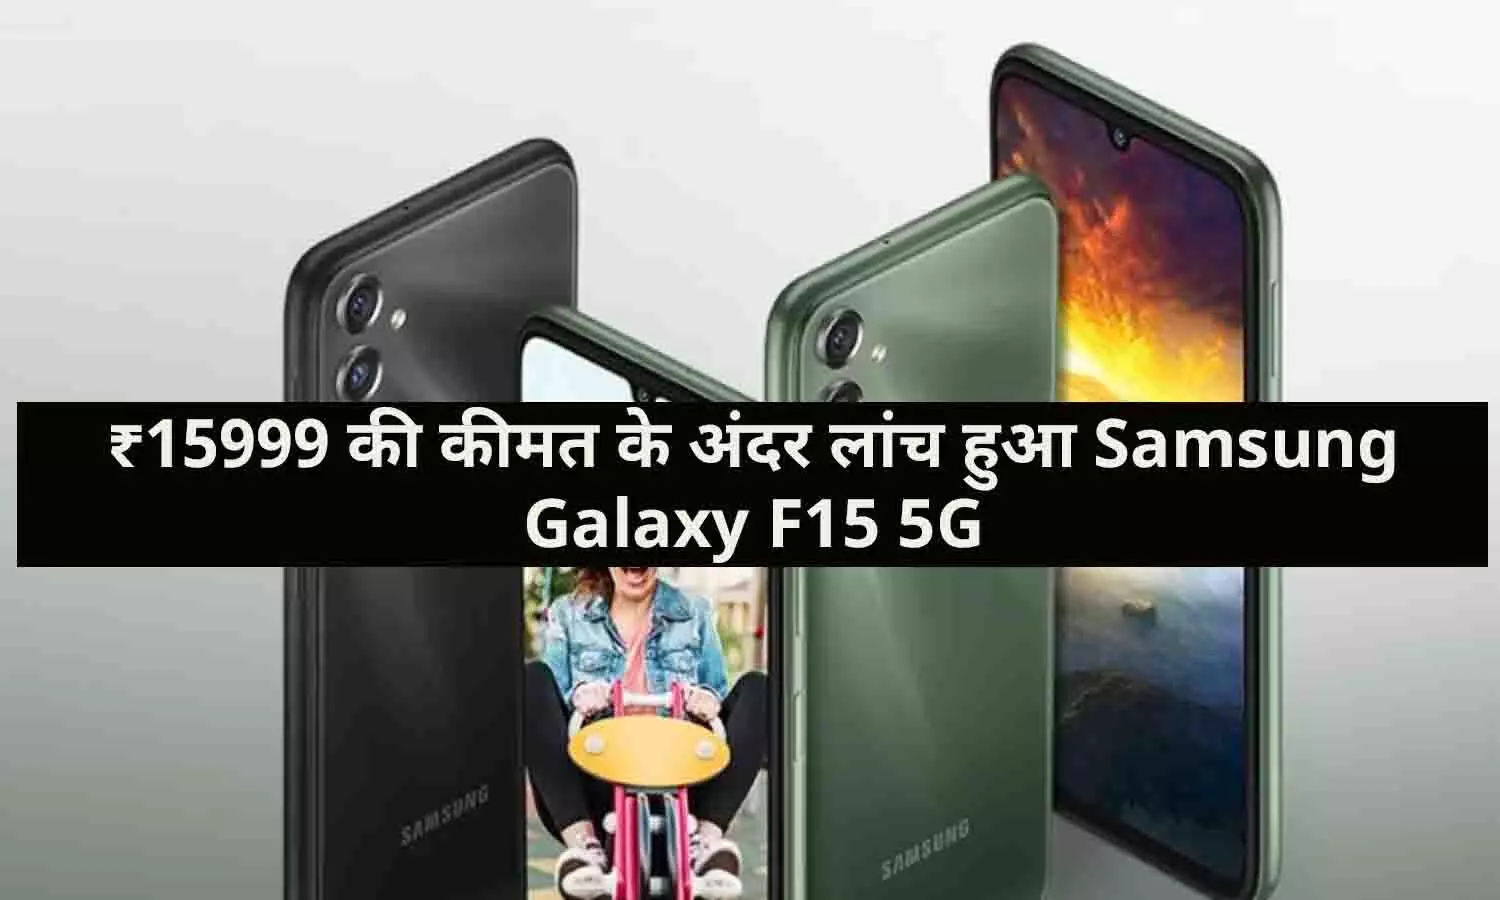 ₹15999 की कीमत के अंदर लांच हुआ Samsung Galaxy F15 5G, जाने Full Details...